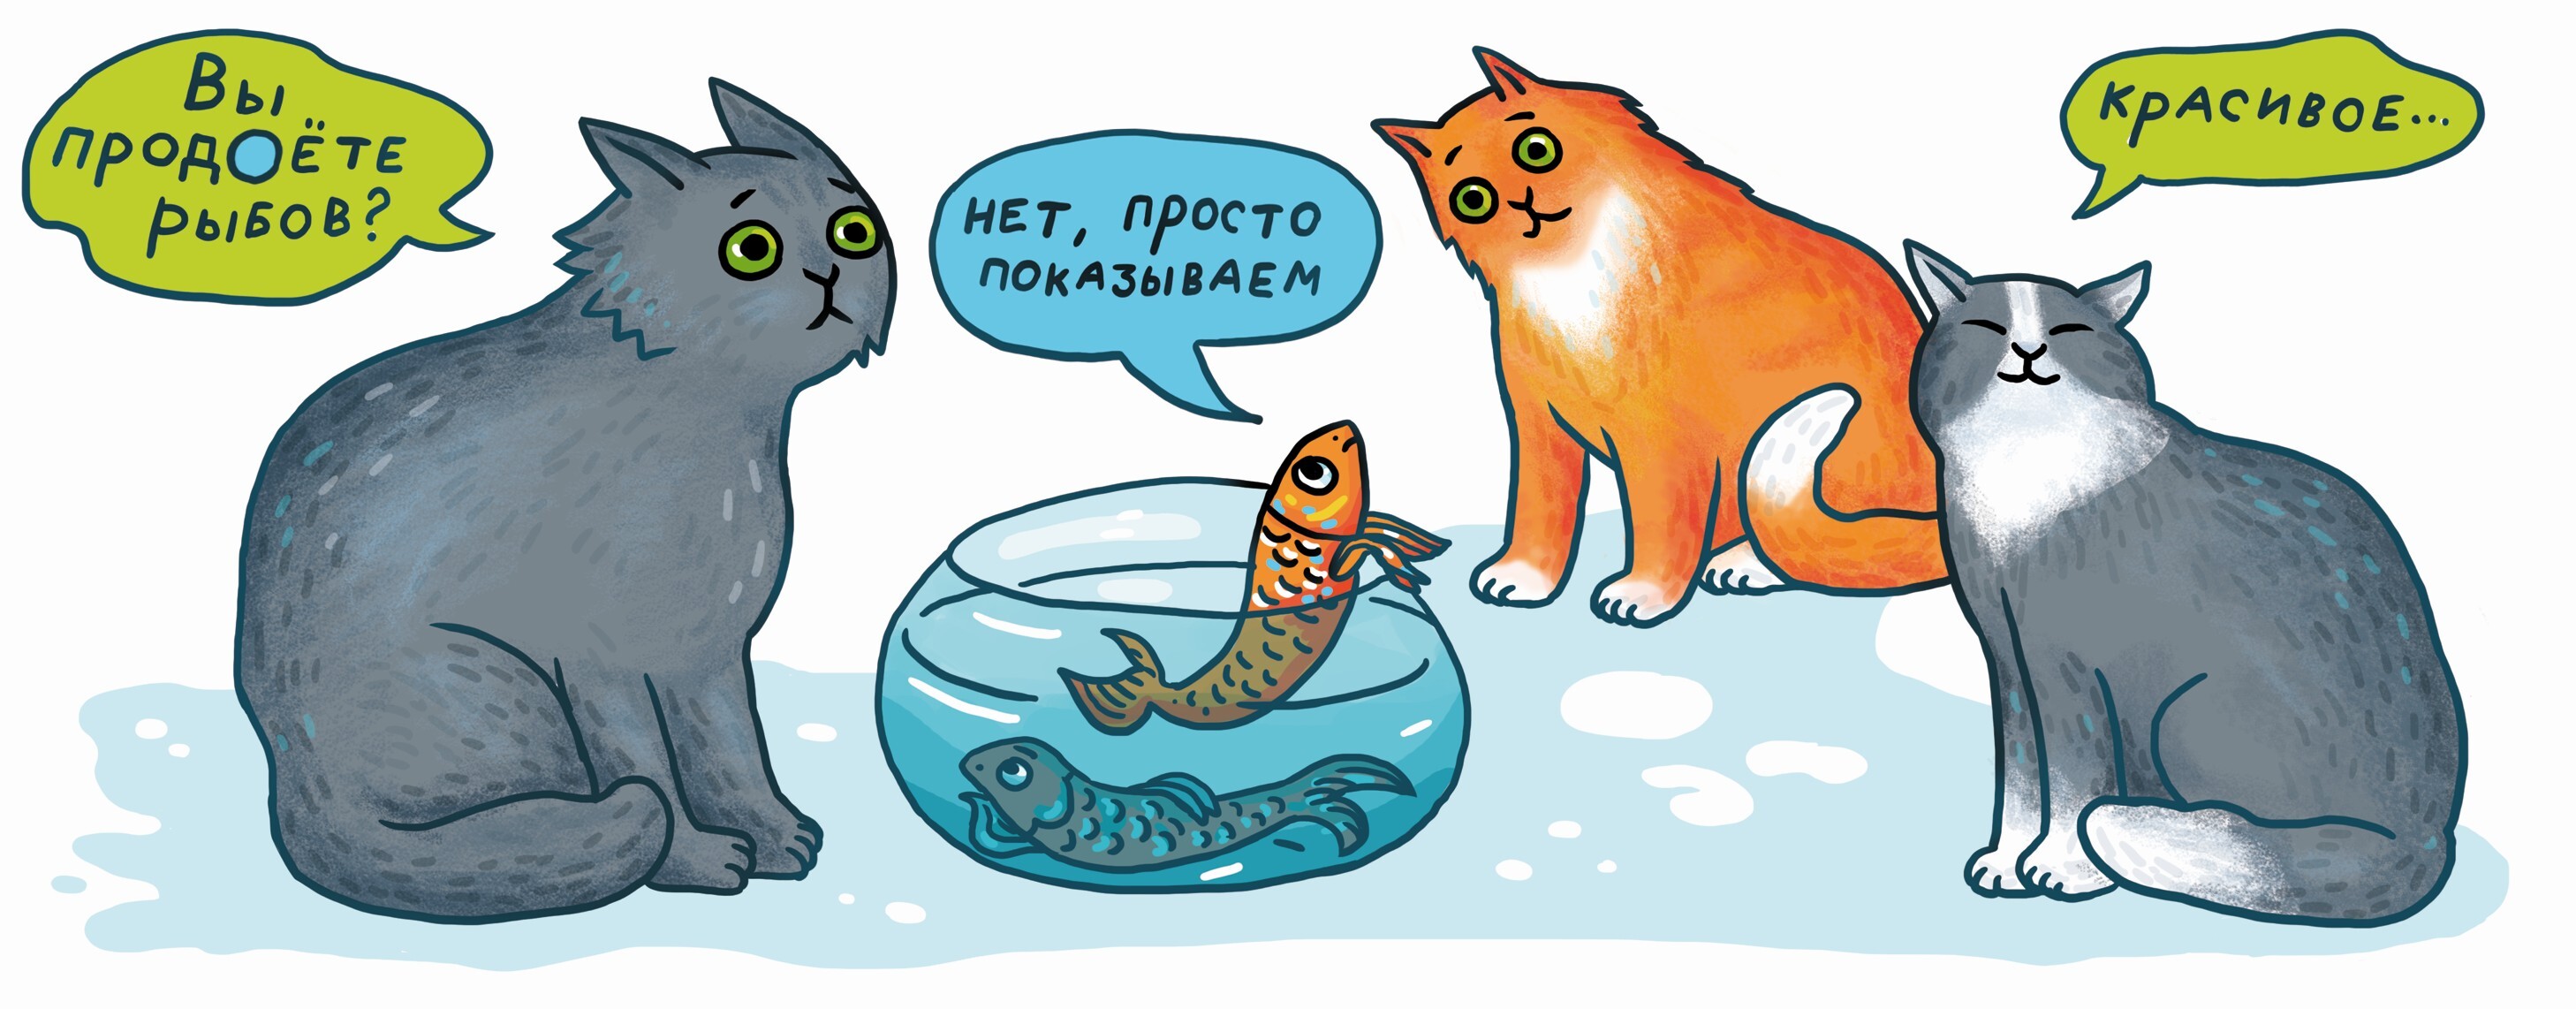 Котам рыбов. Коты вы продаете Рыбов. Продоете Рыбов. Коты мемы про рыбу. Мем с котами и рыбой.